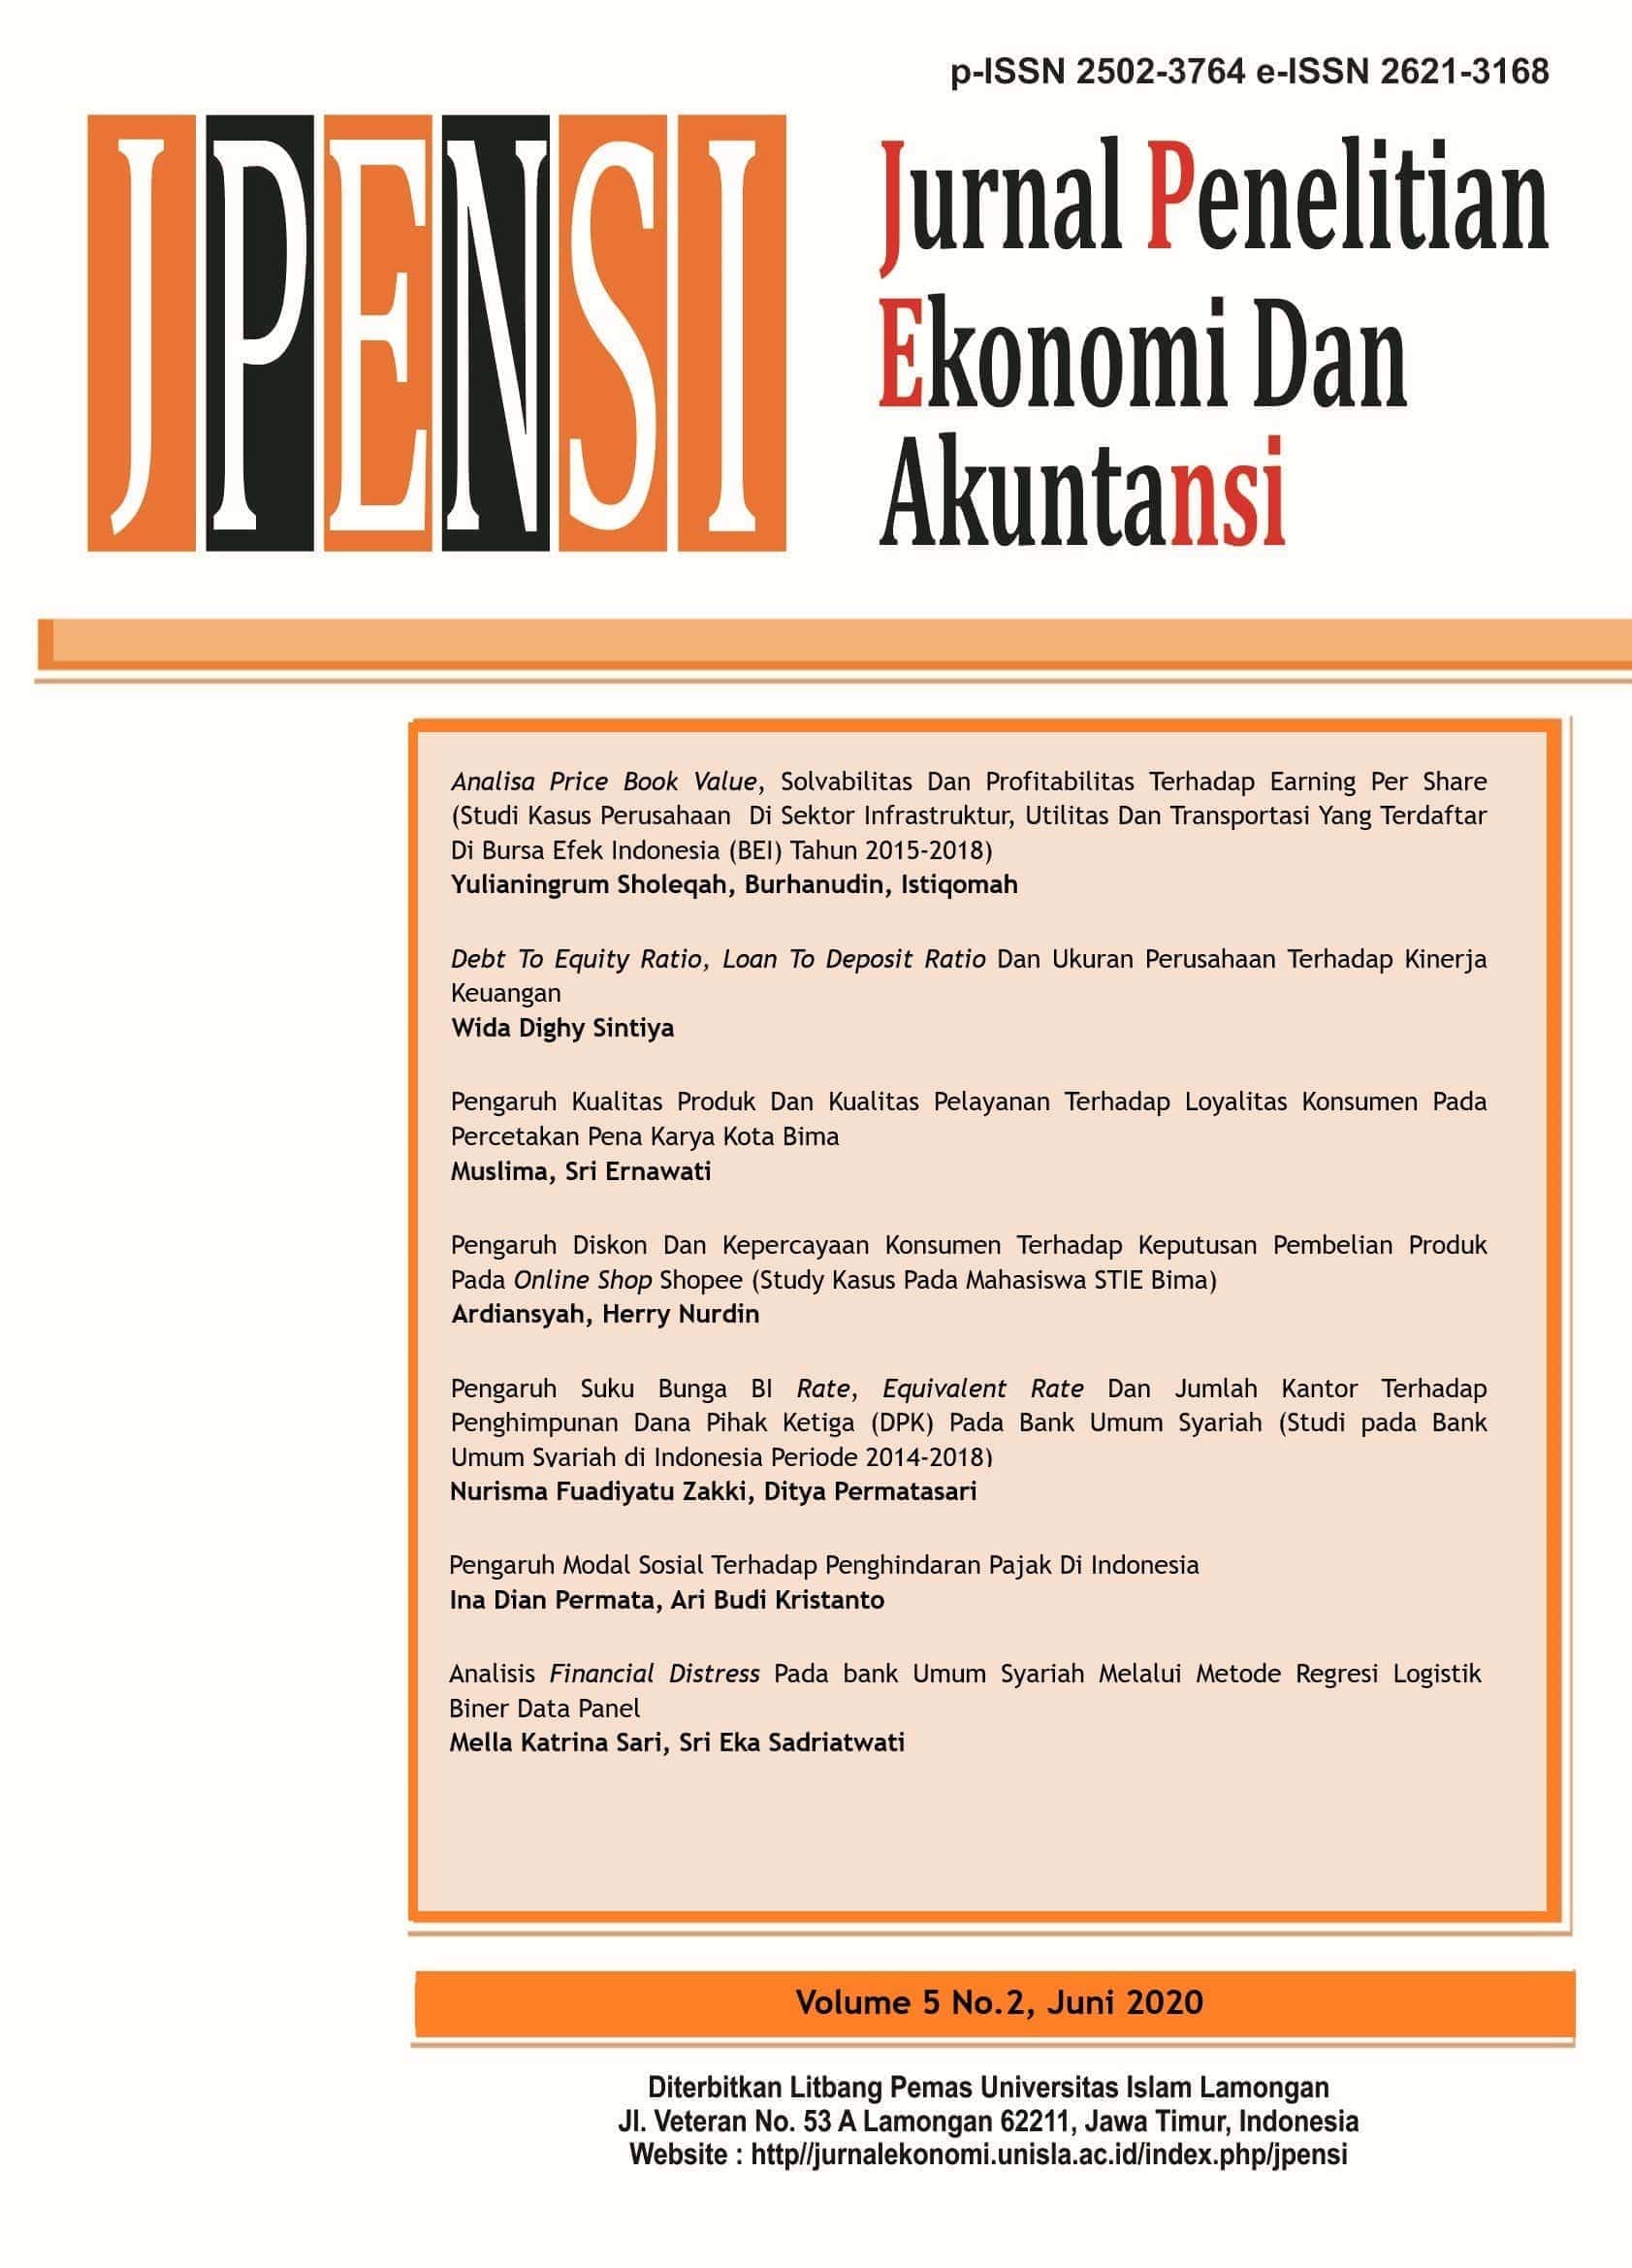 					Lihat Vol 5 No 3 (2020): JURNAL PENELITIAN EKONOMI DAN AKUNTANSI (JPENSI)
				